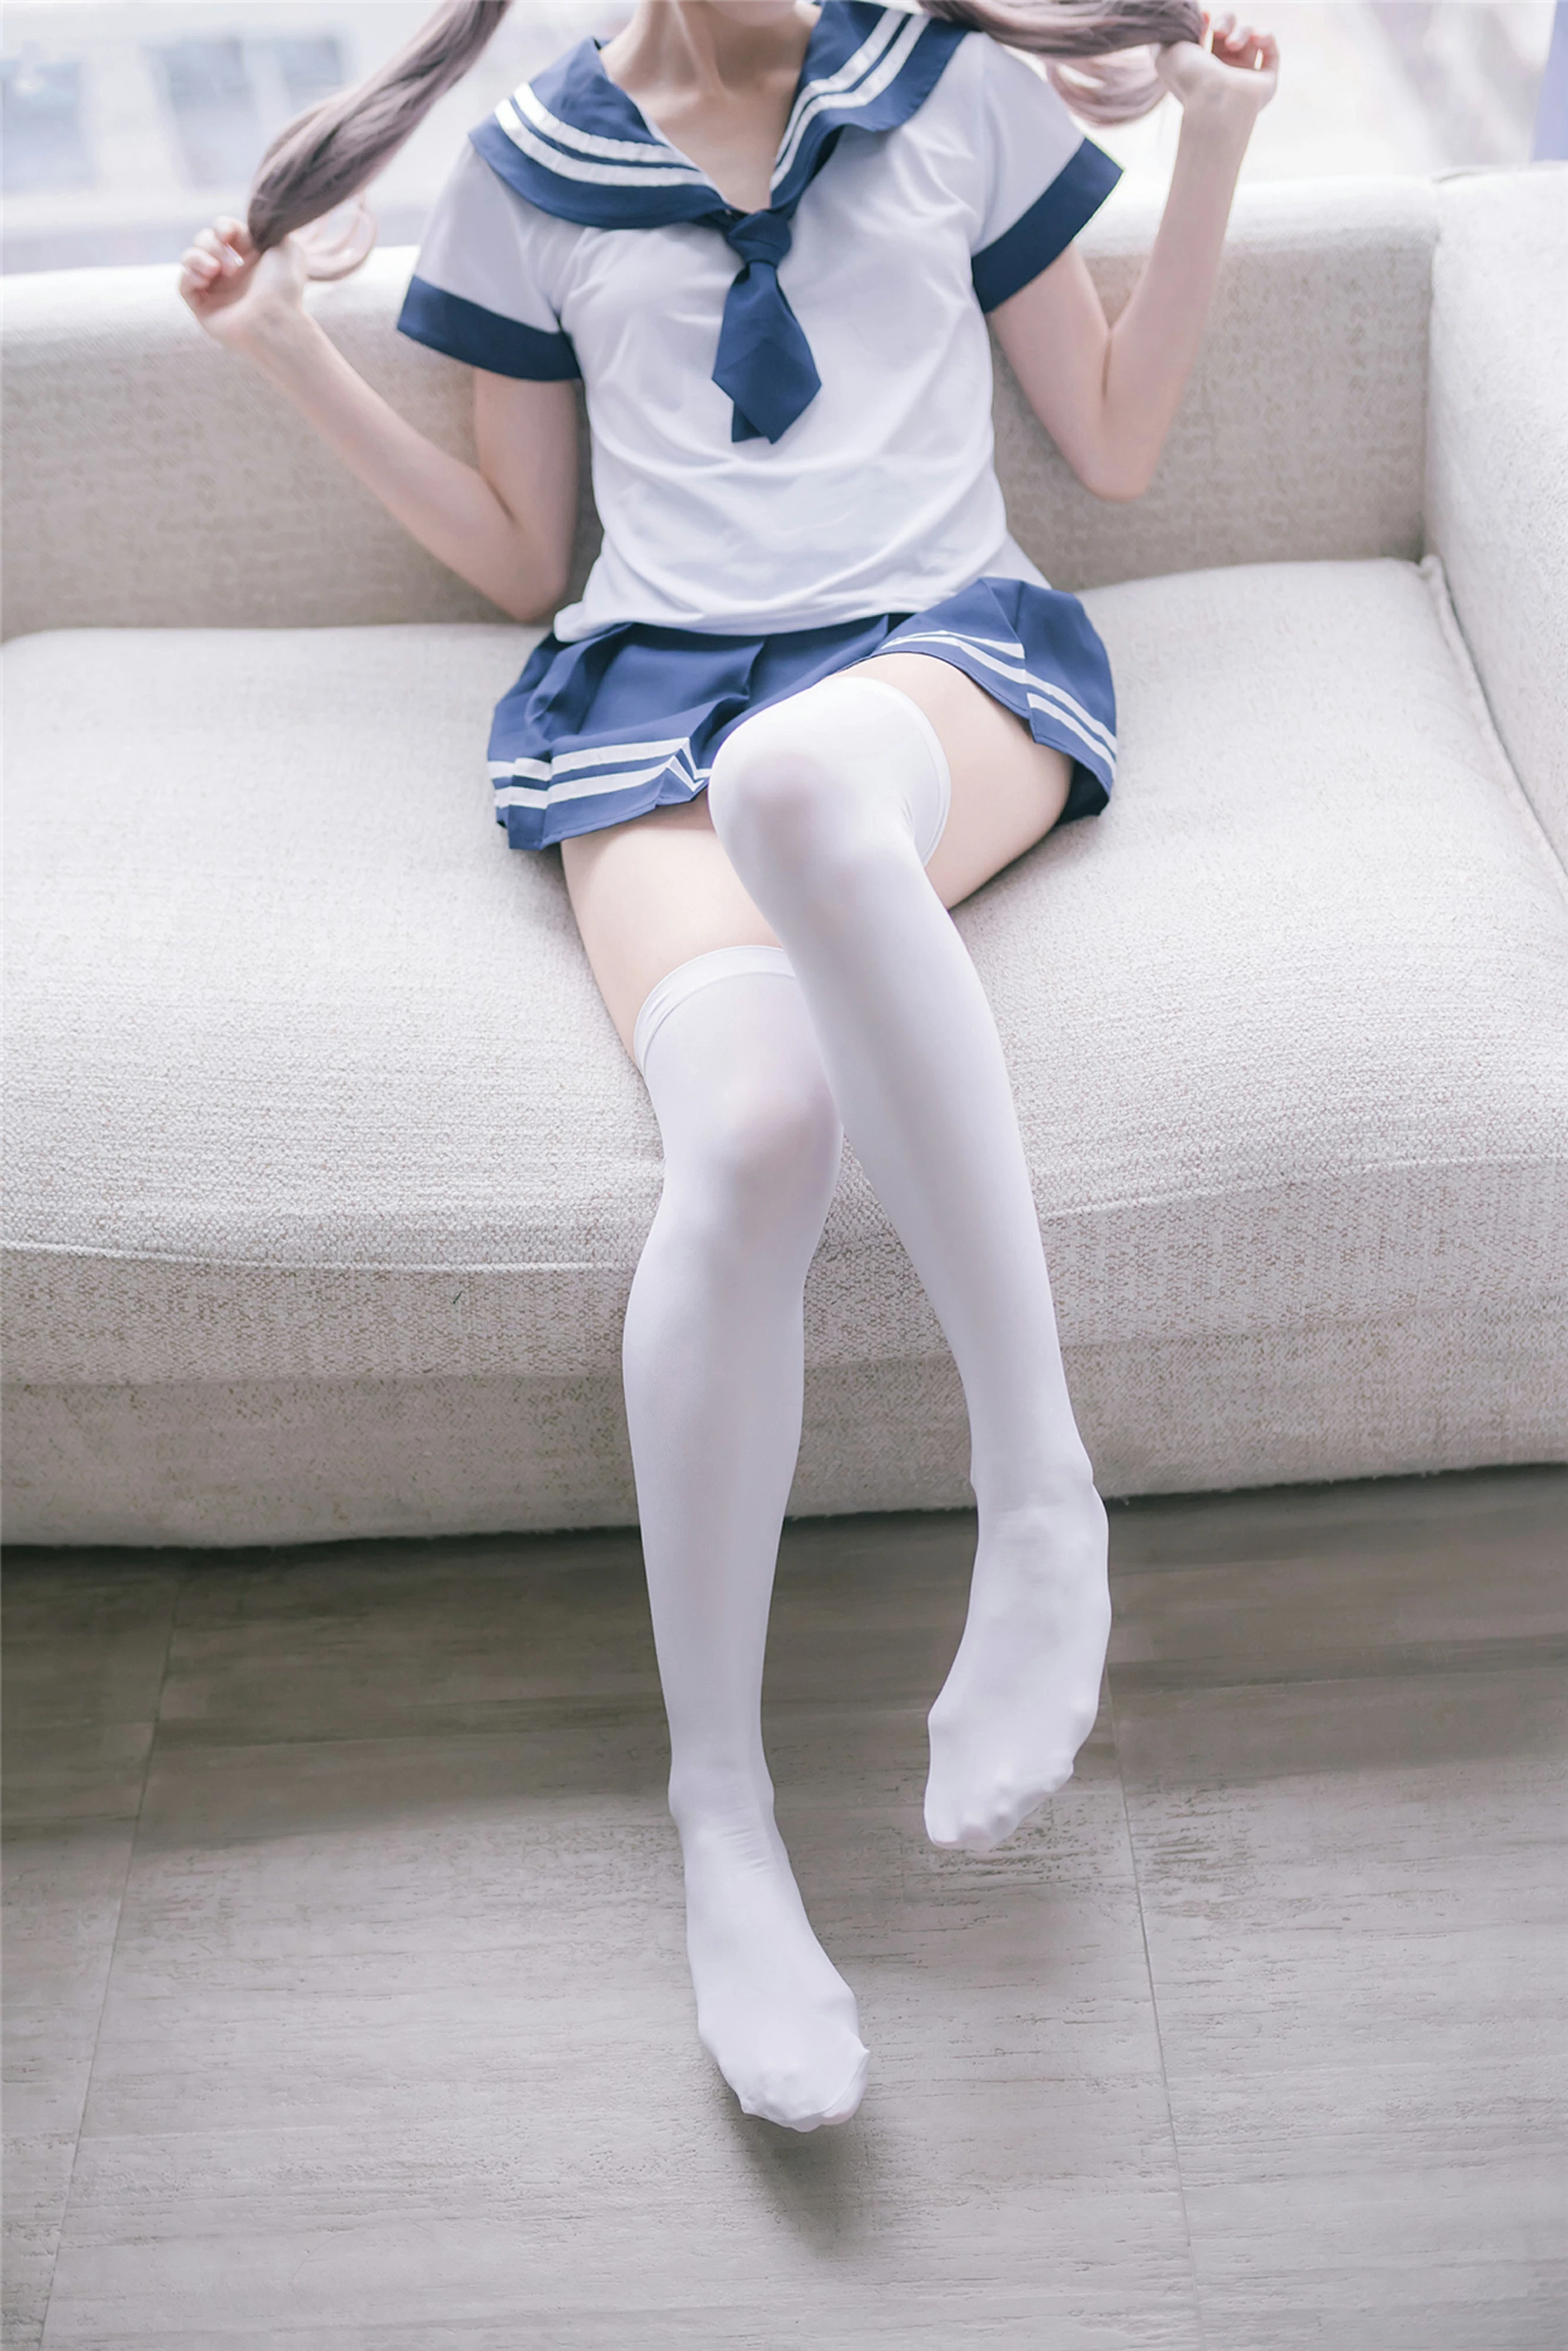 [风之领域]NO.084 性感学妹小萝莉 白色高中女生制服与短裙加白色丝袜美腿私房写真集,